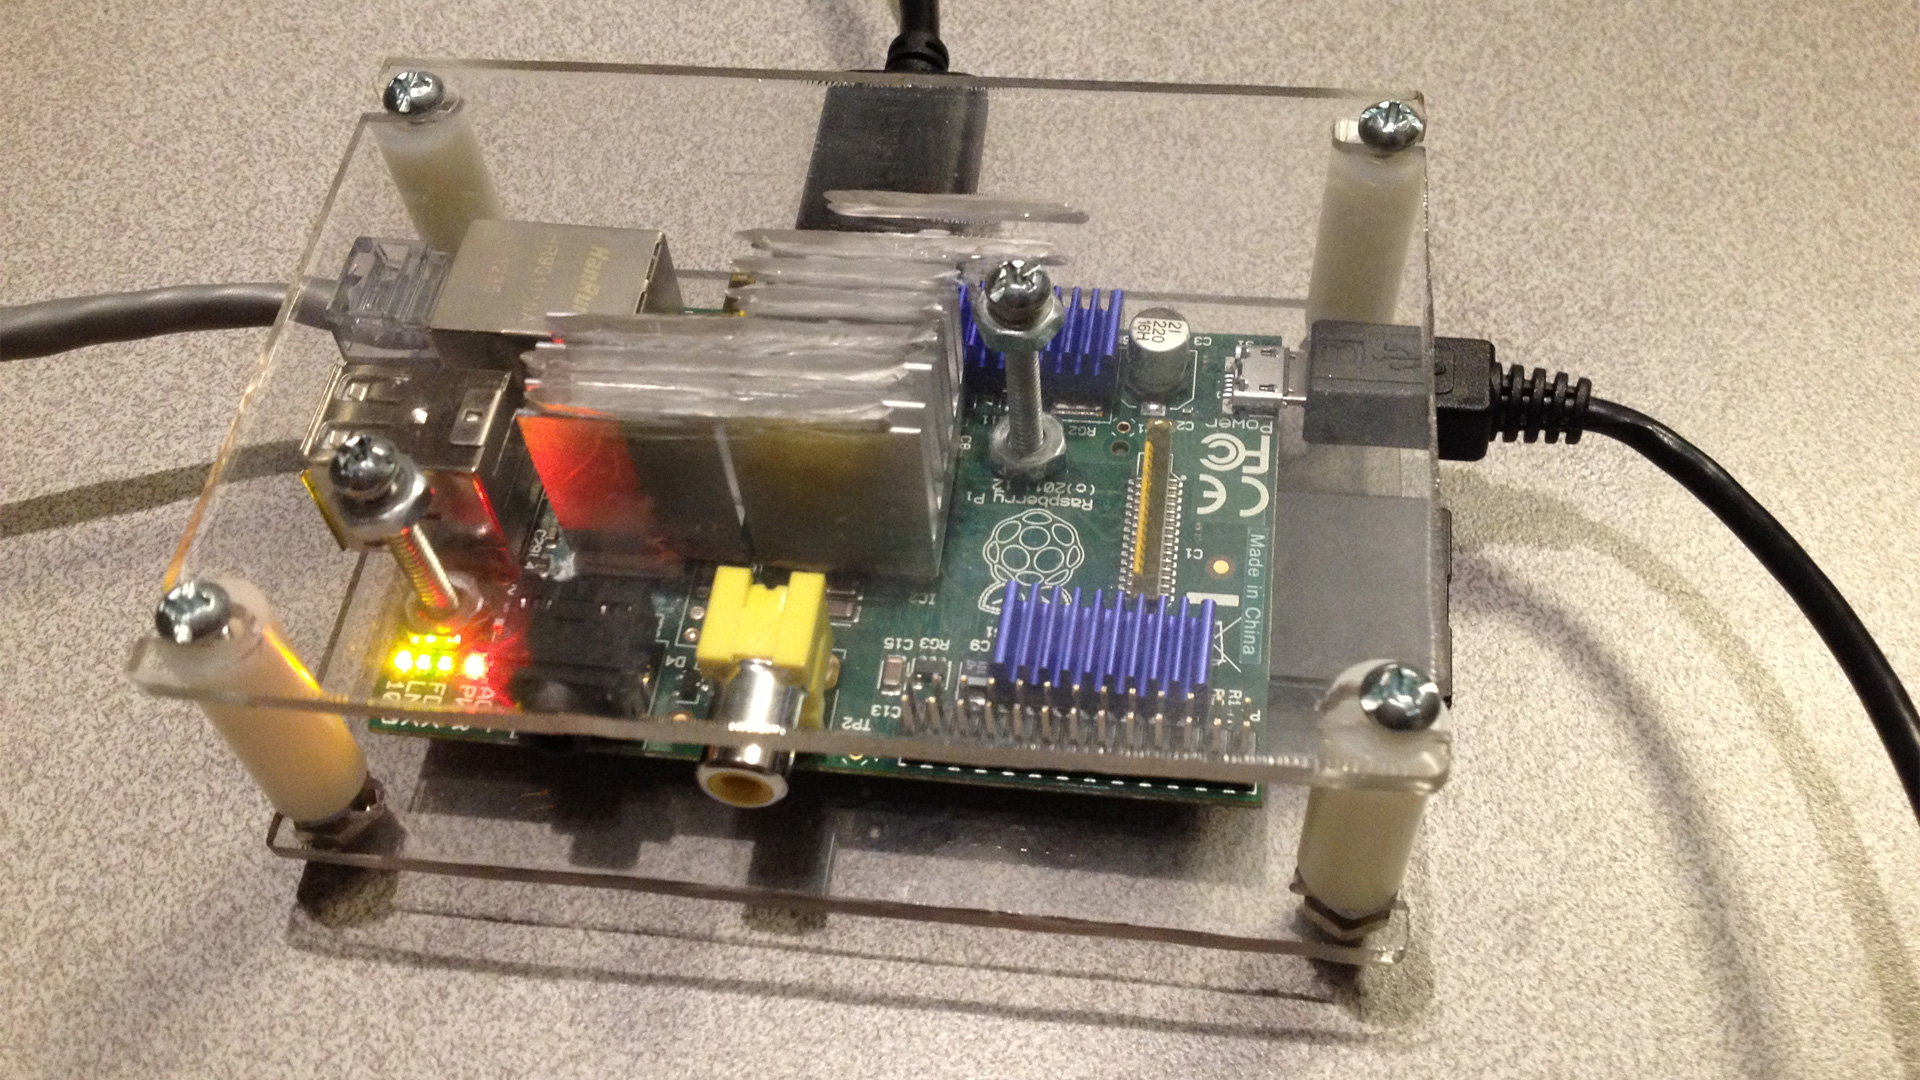 S-Config's Raspberry Pi Raspi running headless OpenSim